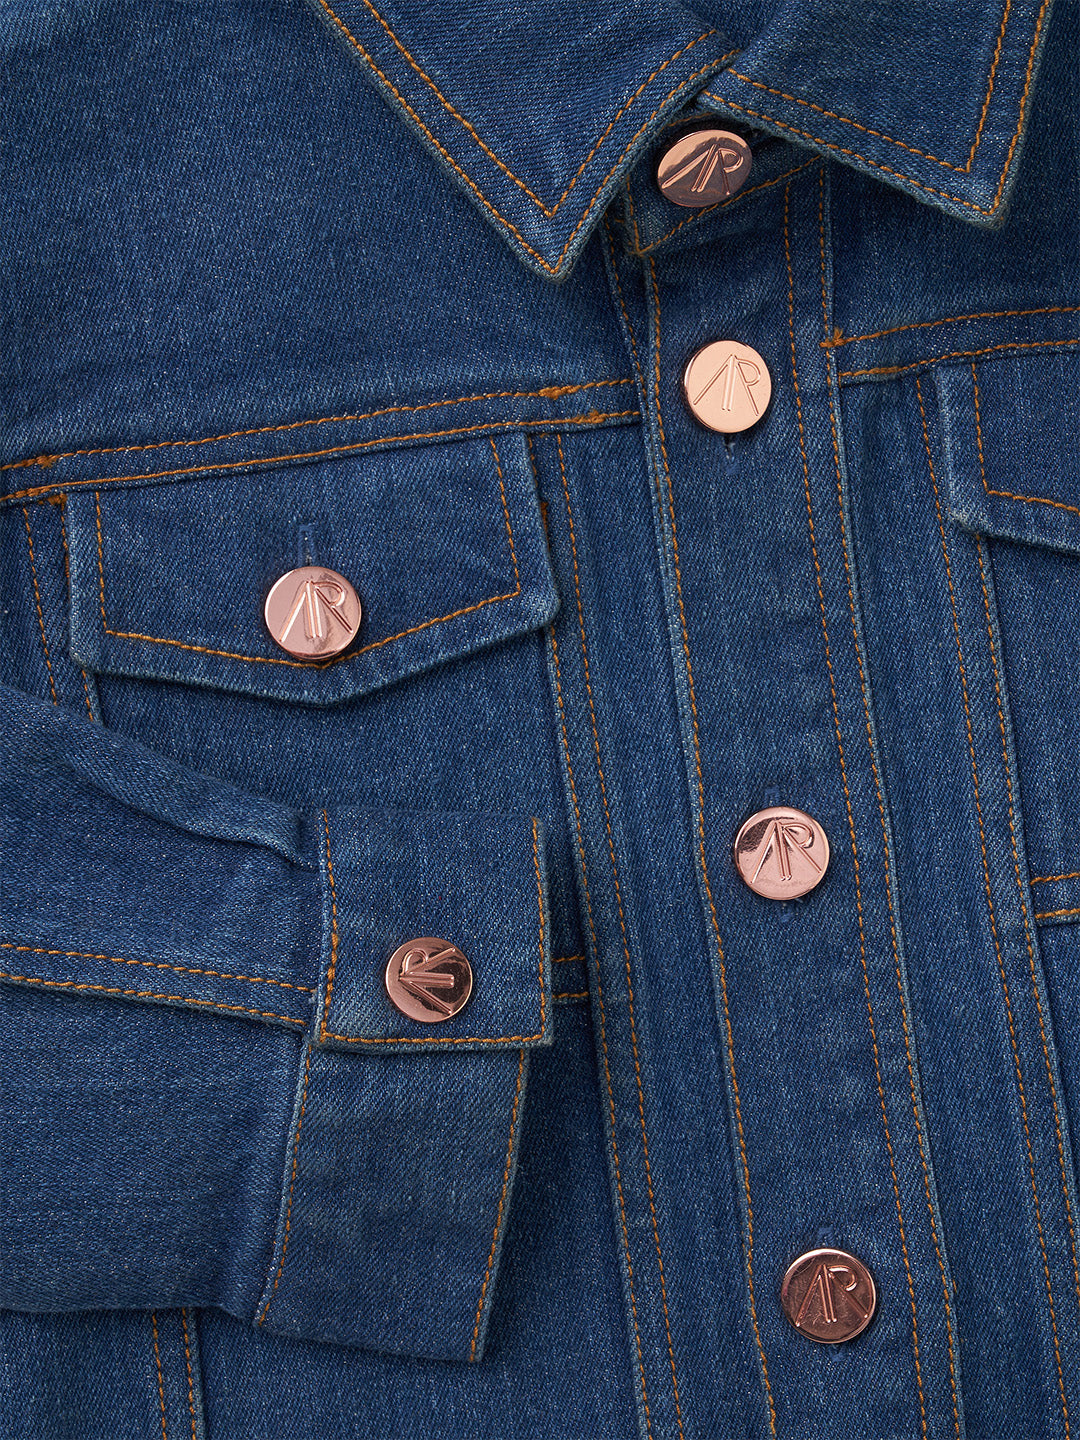 GB Little Girls 2T-6X Cropped Distressed Denim Jacket | Dillard's